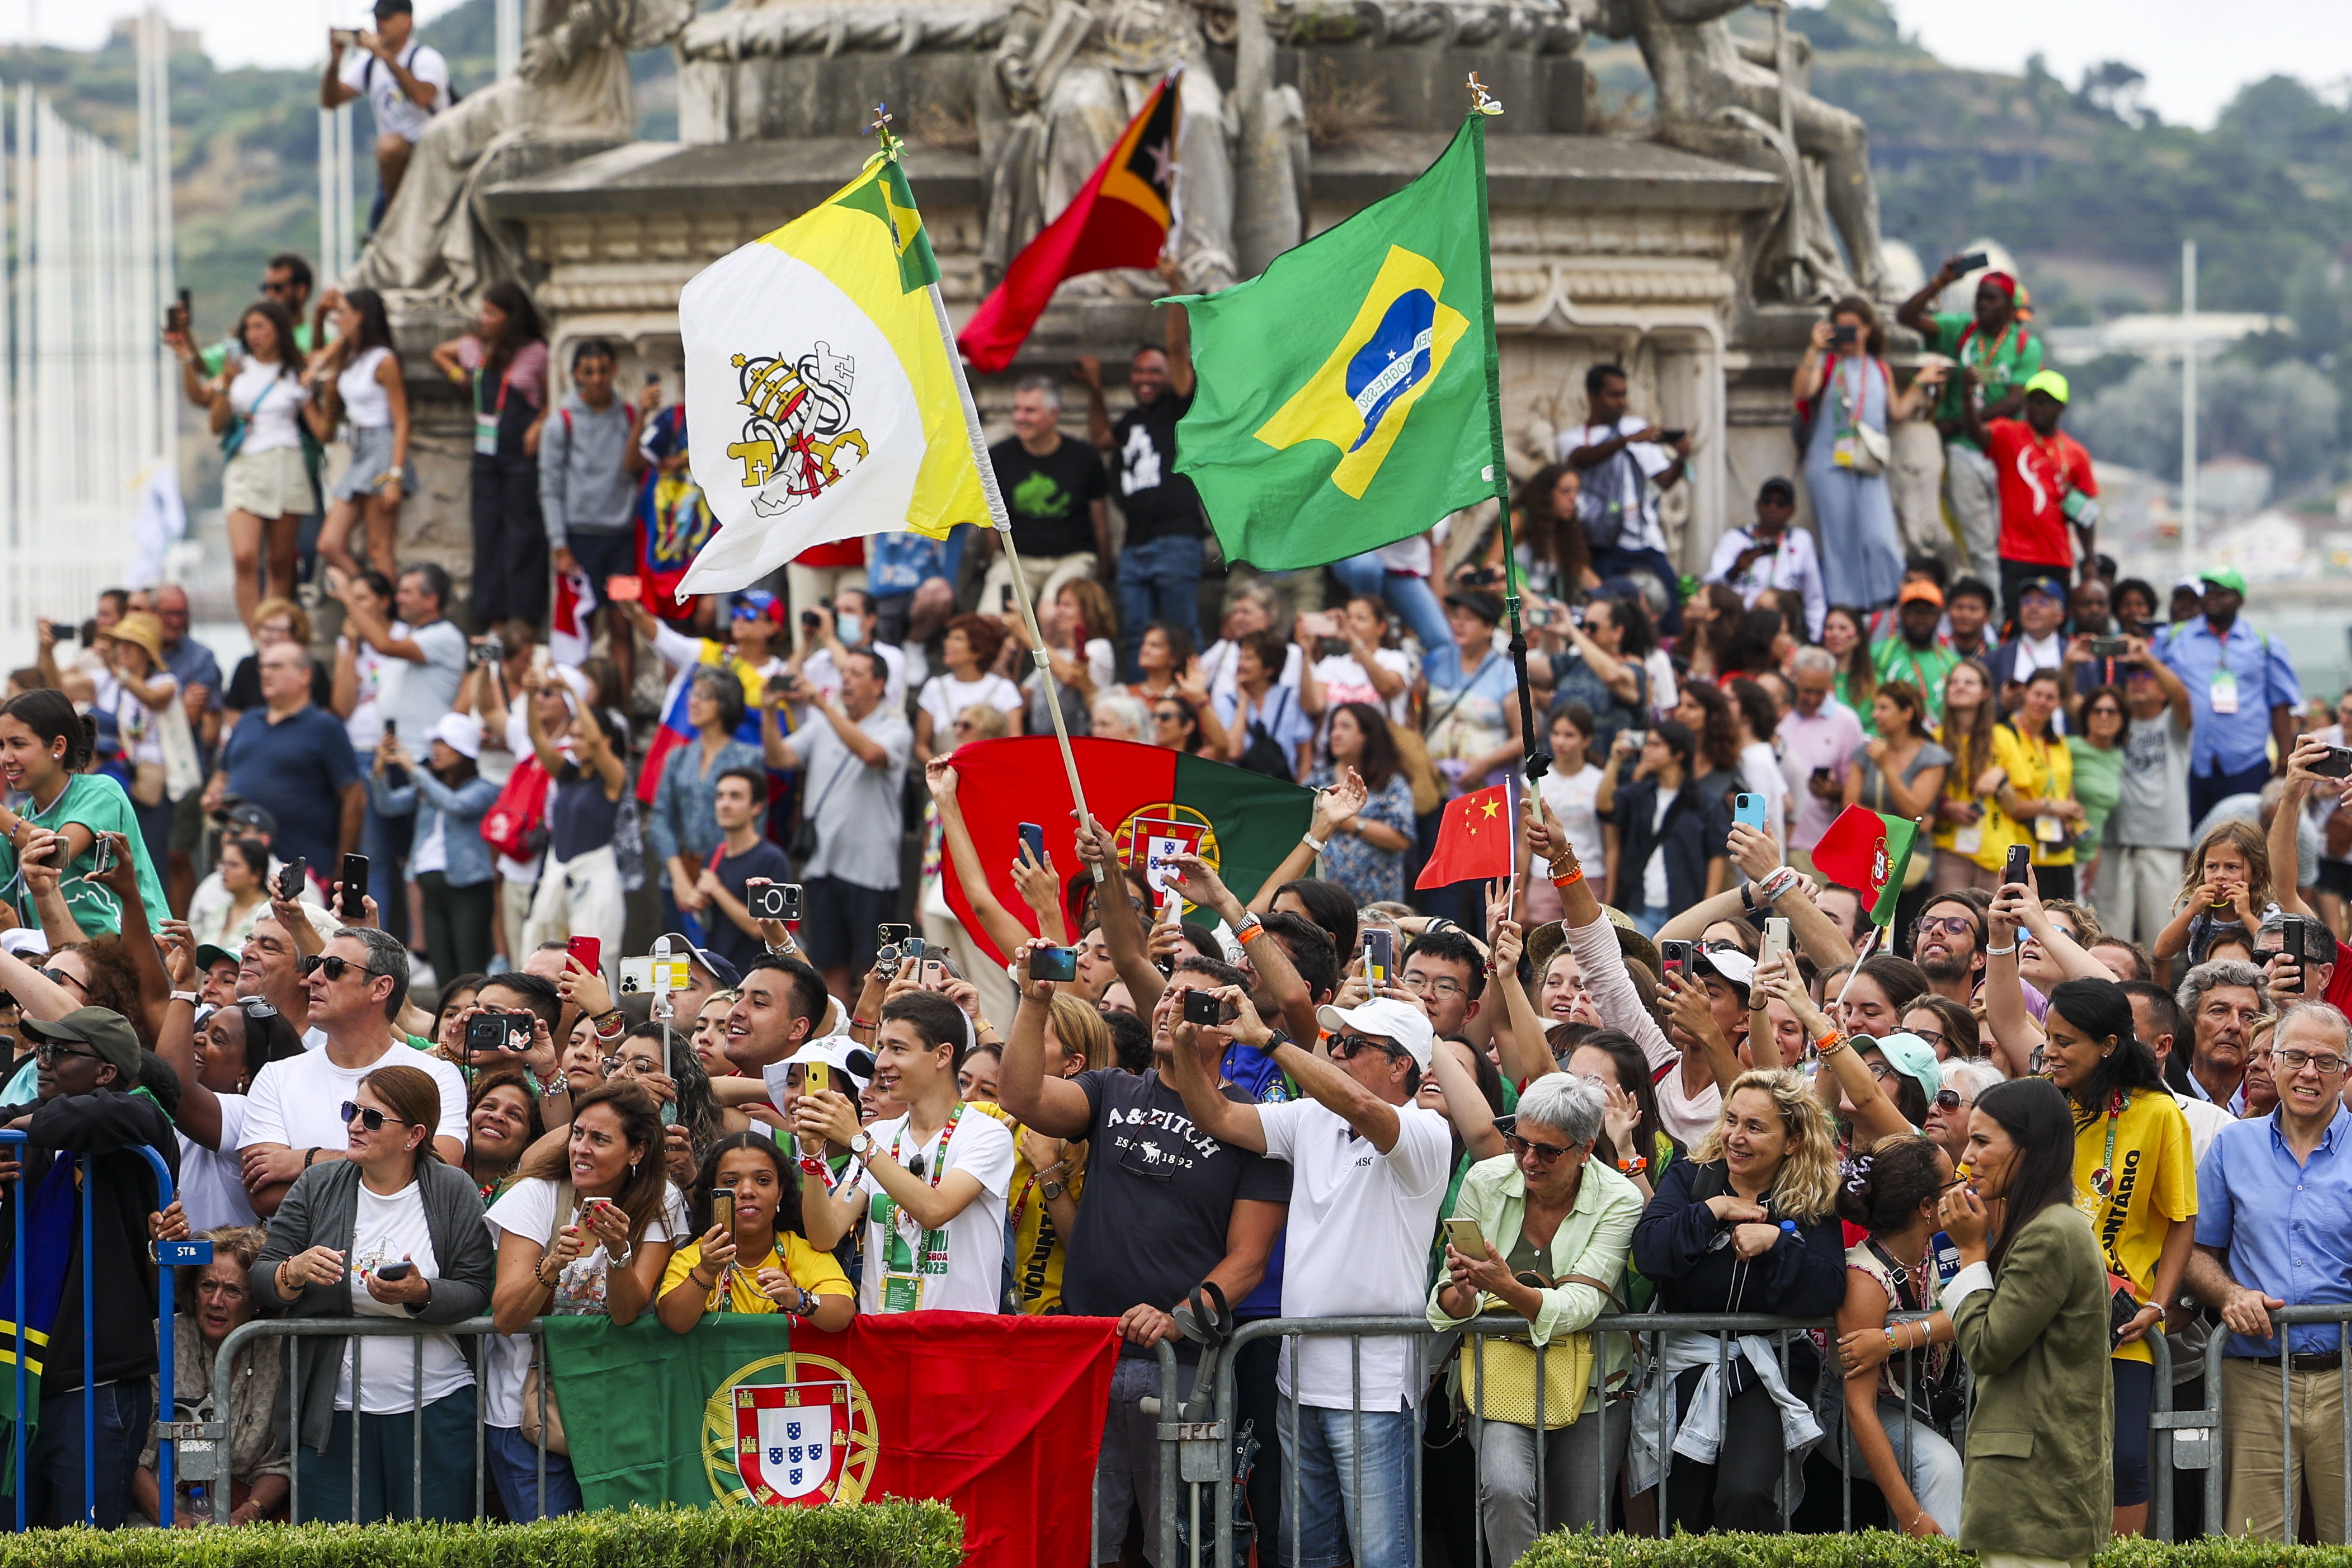  El papa Francisco participó en Portugal con motivo de la Jornada Mundial de la Juventud (JMJ), uno de los principales eventos de la Iglesia que reúne al Papa con jóvenes de todo el mundo, que se realiza hasta el 06 de agosto. (Foto Prensa Libre: EE)